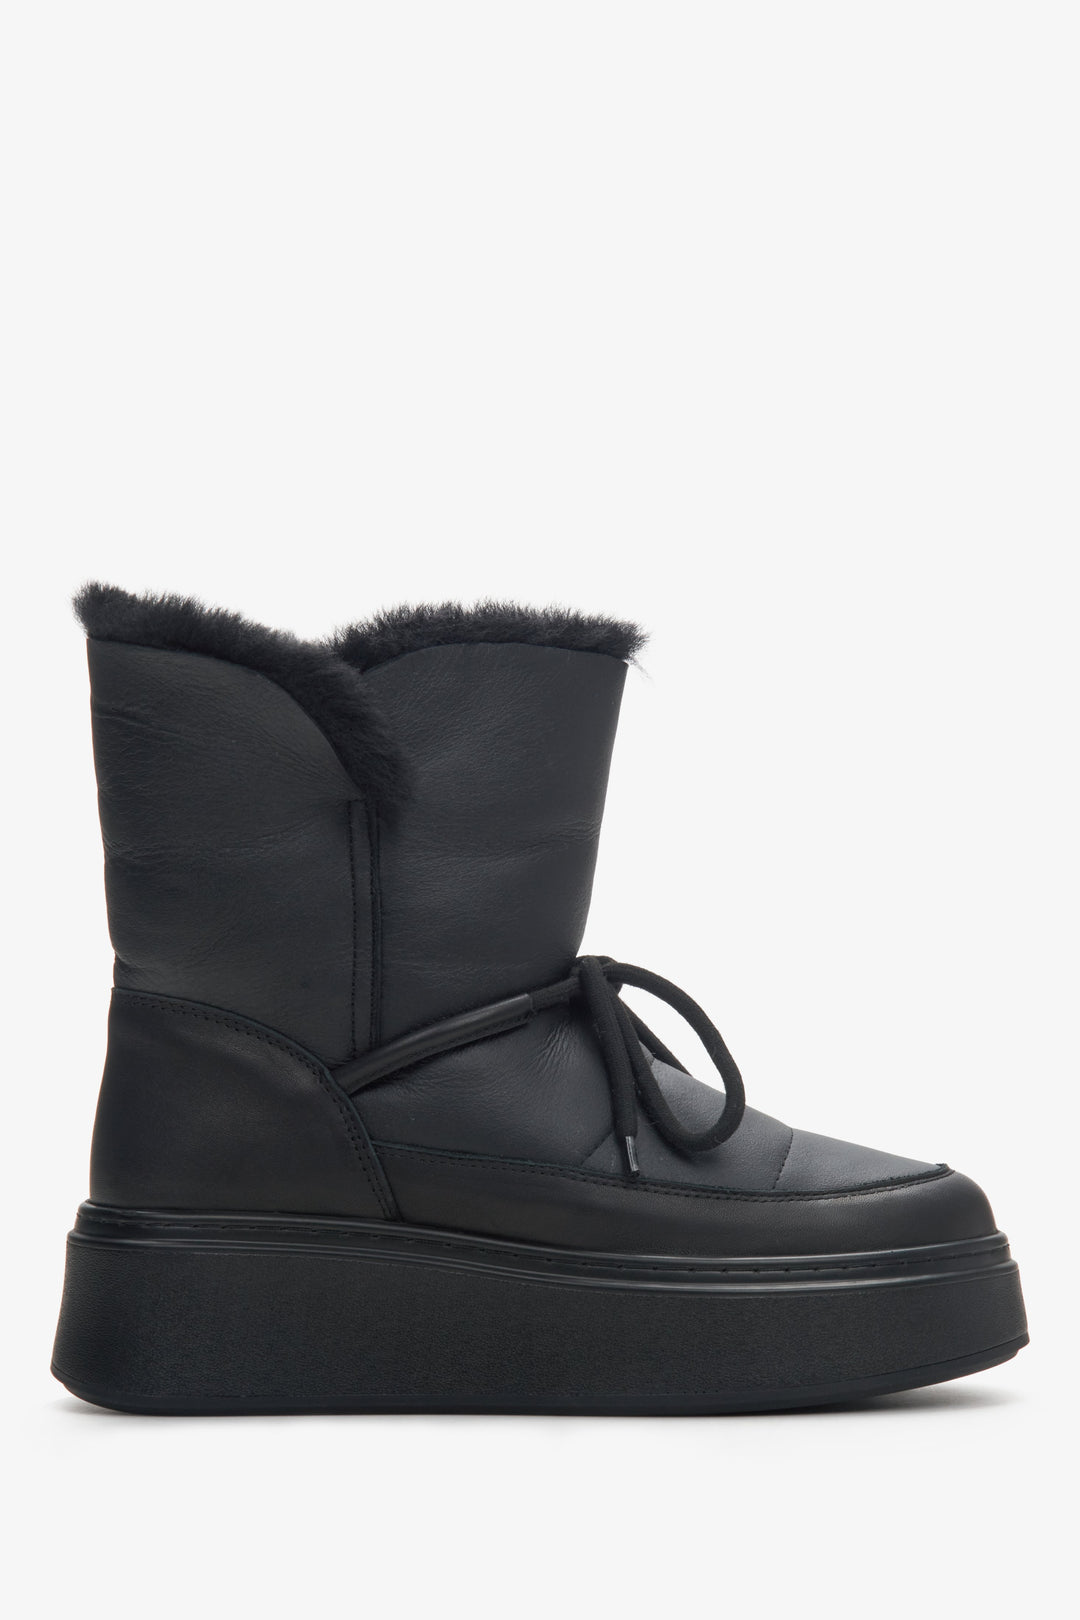 Women's Black Leather Fur Lined Show Boots Estro ER00114224